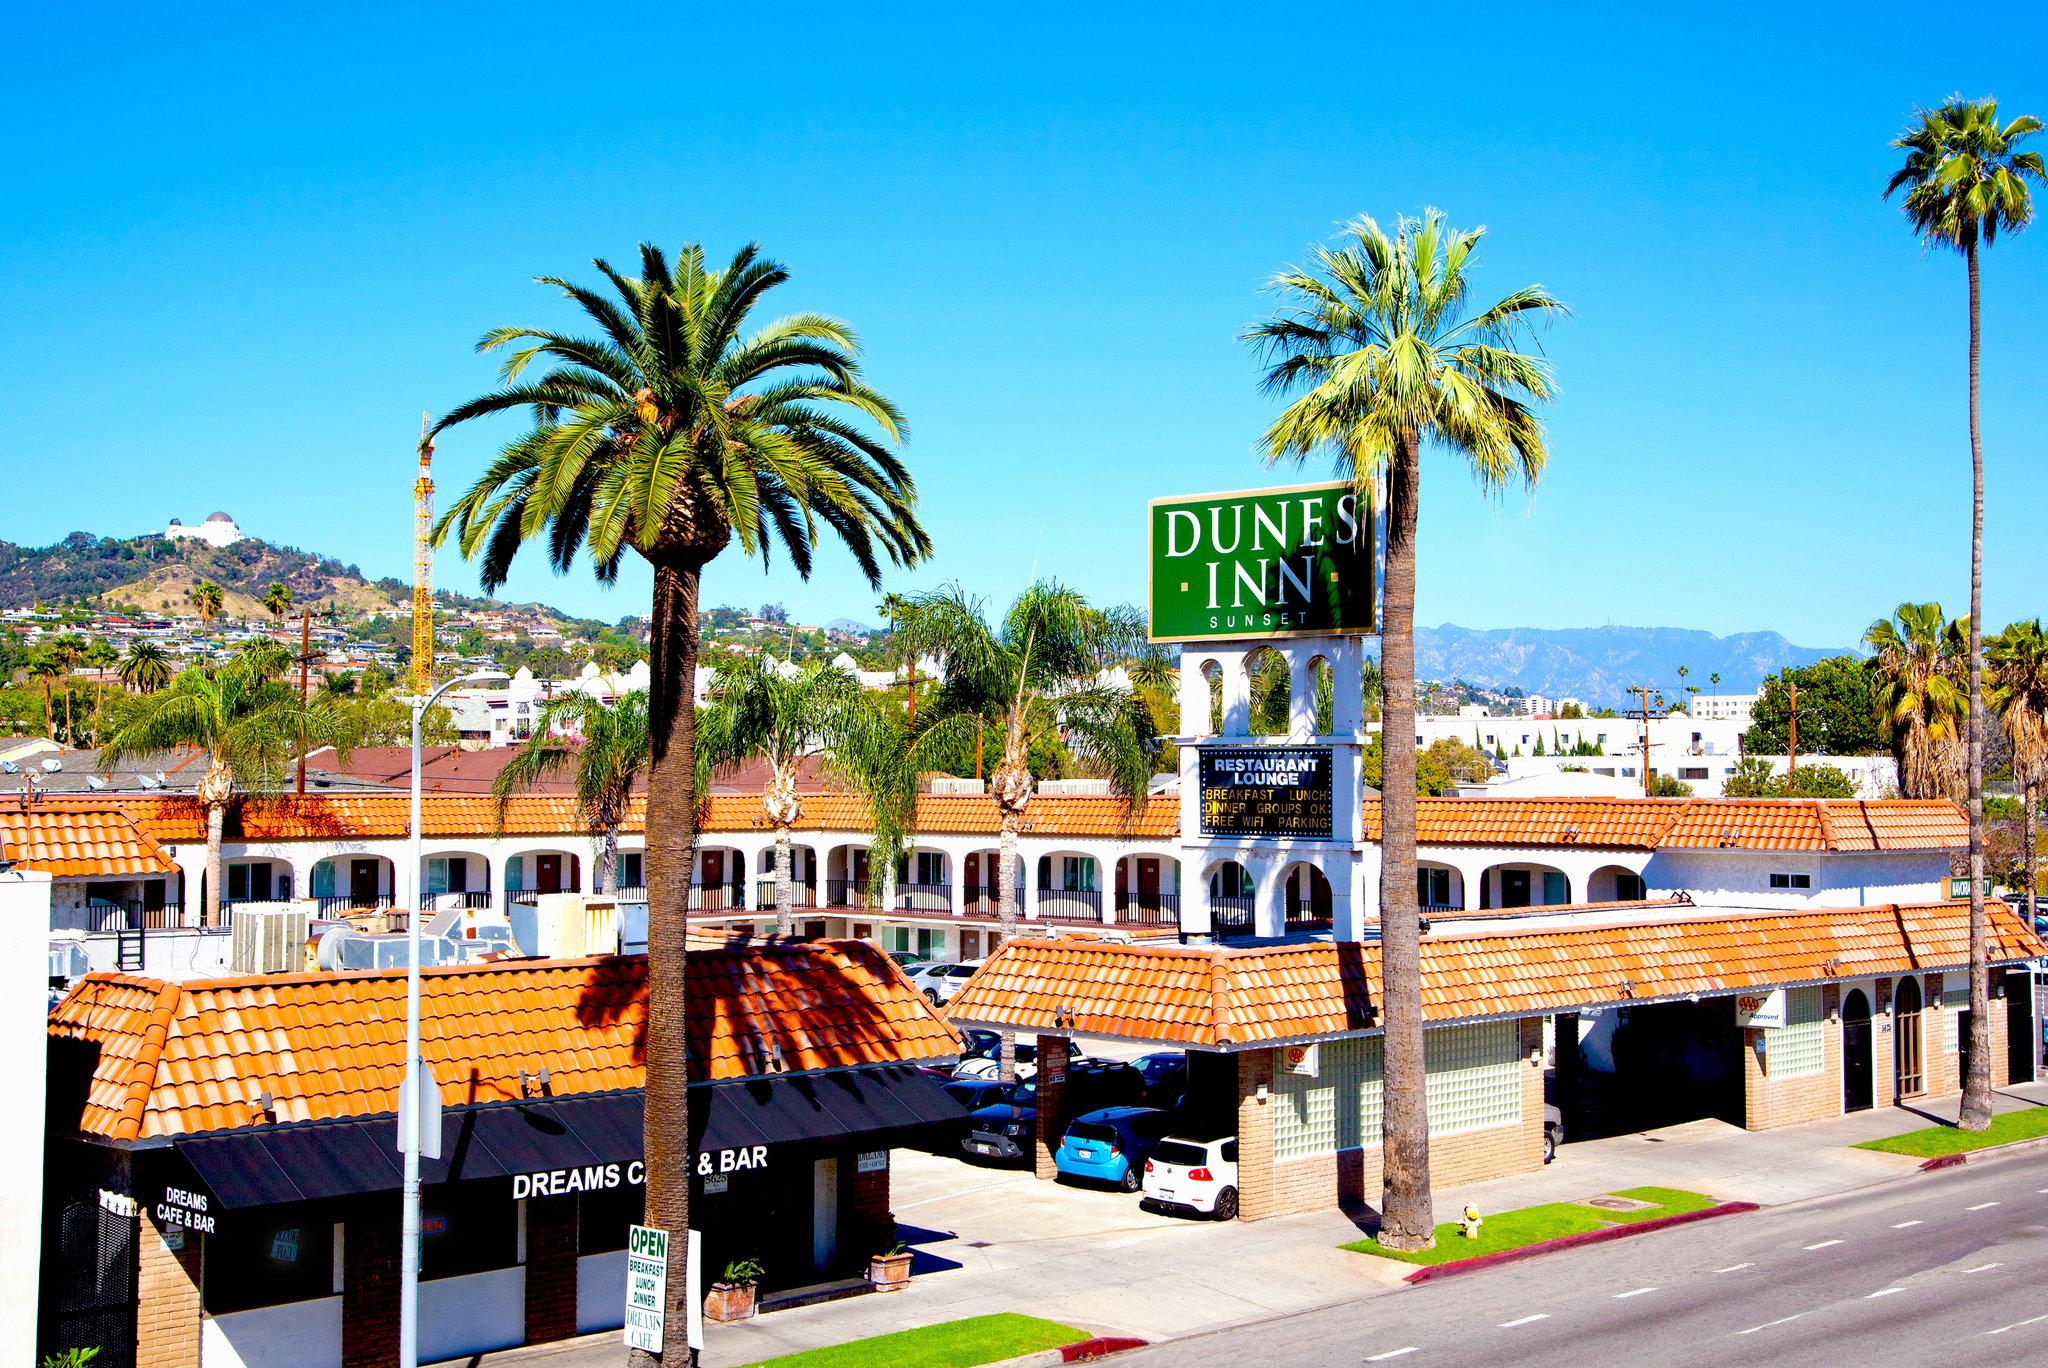 Dunes Inn - Sunset in Hollywood, CA